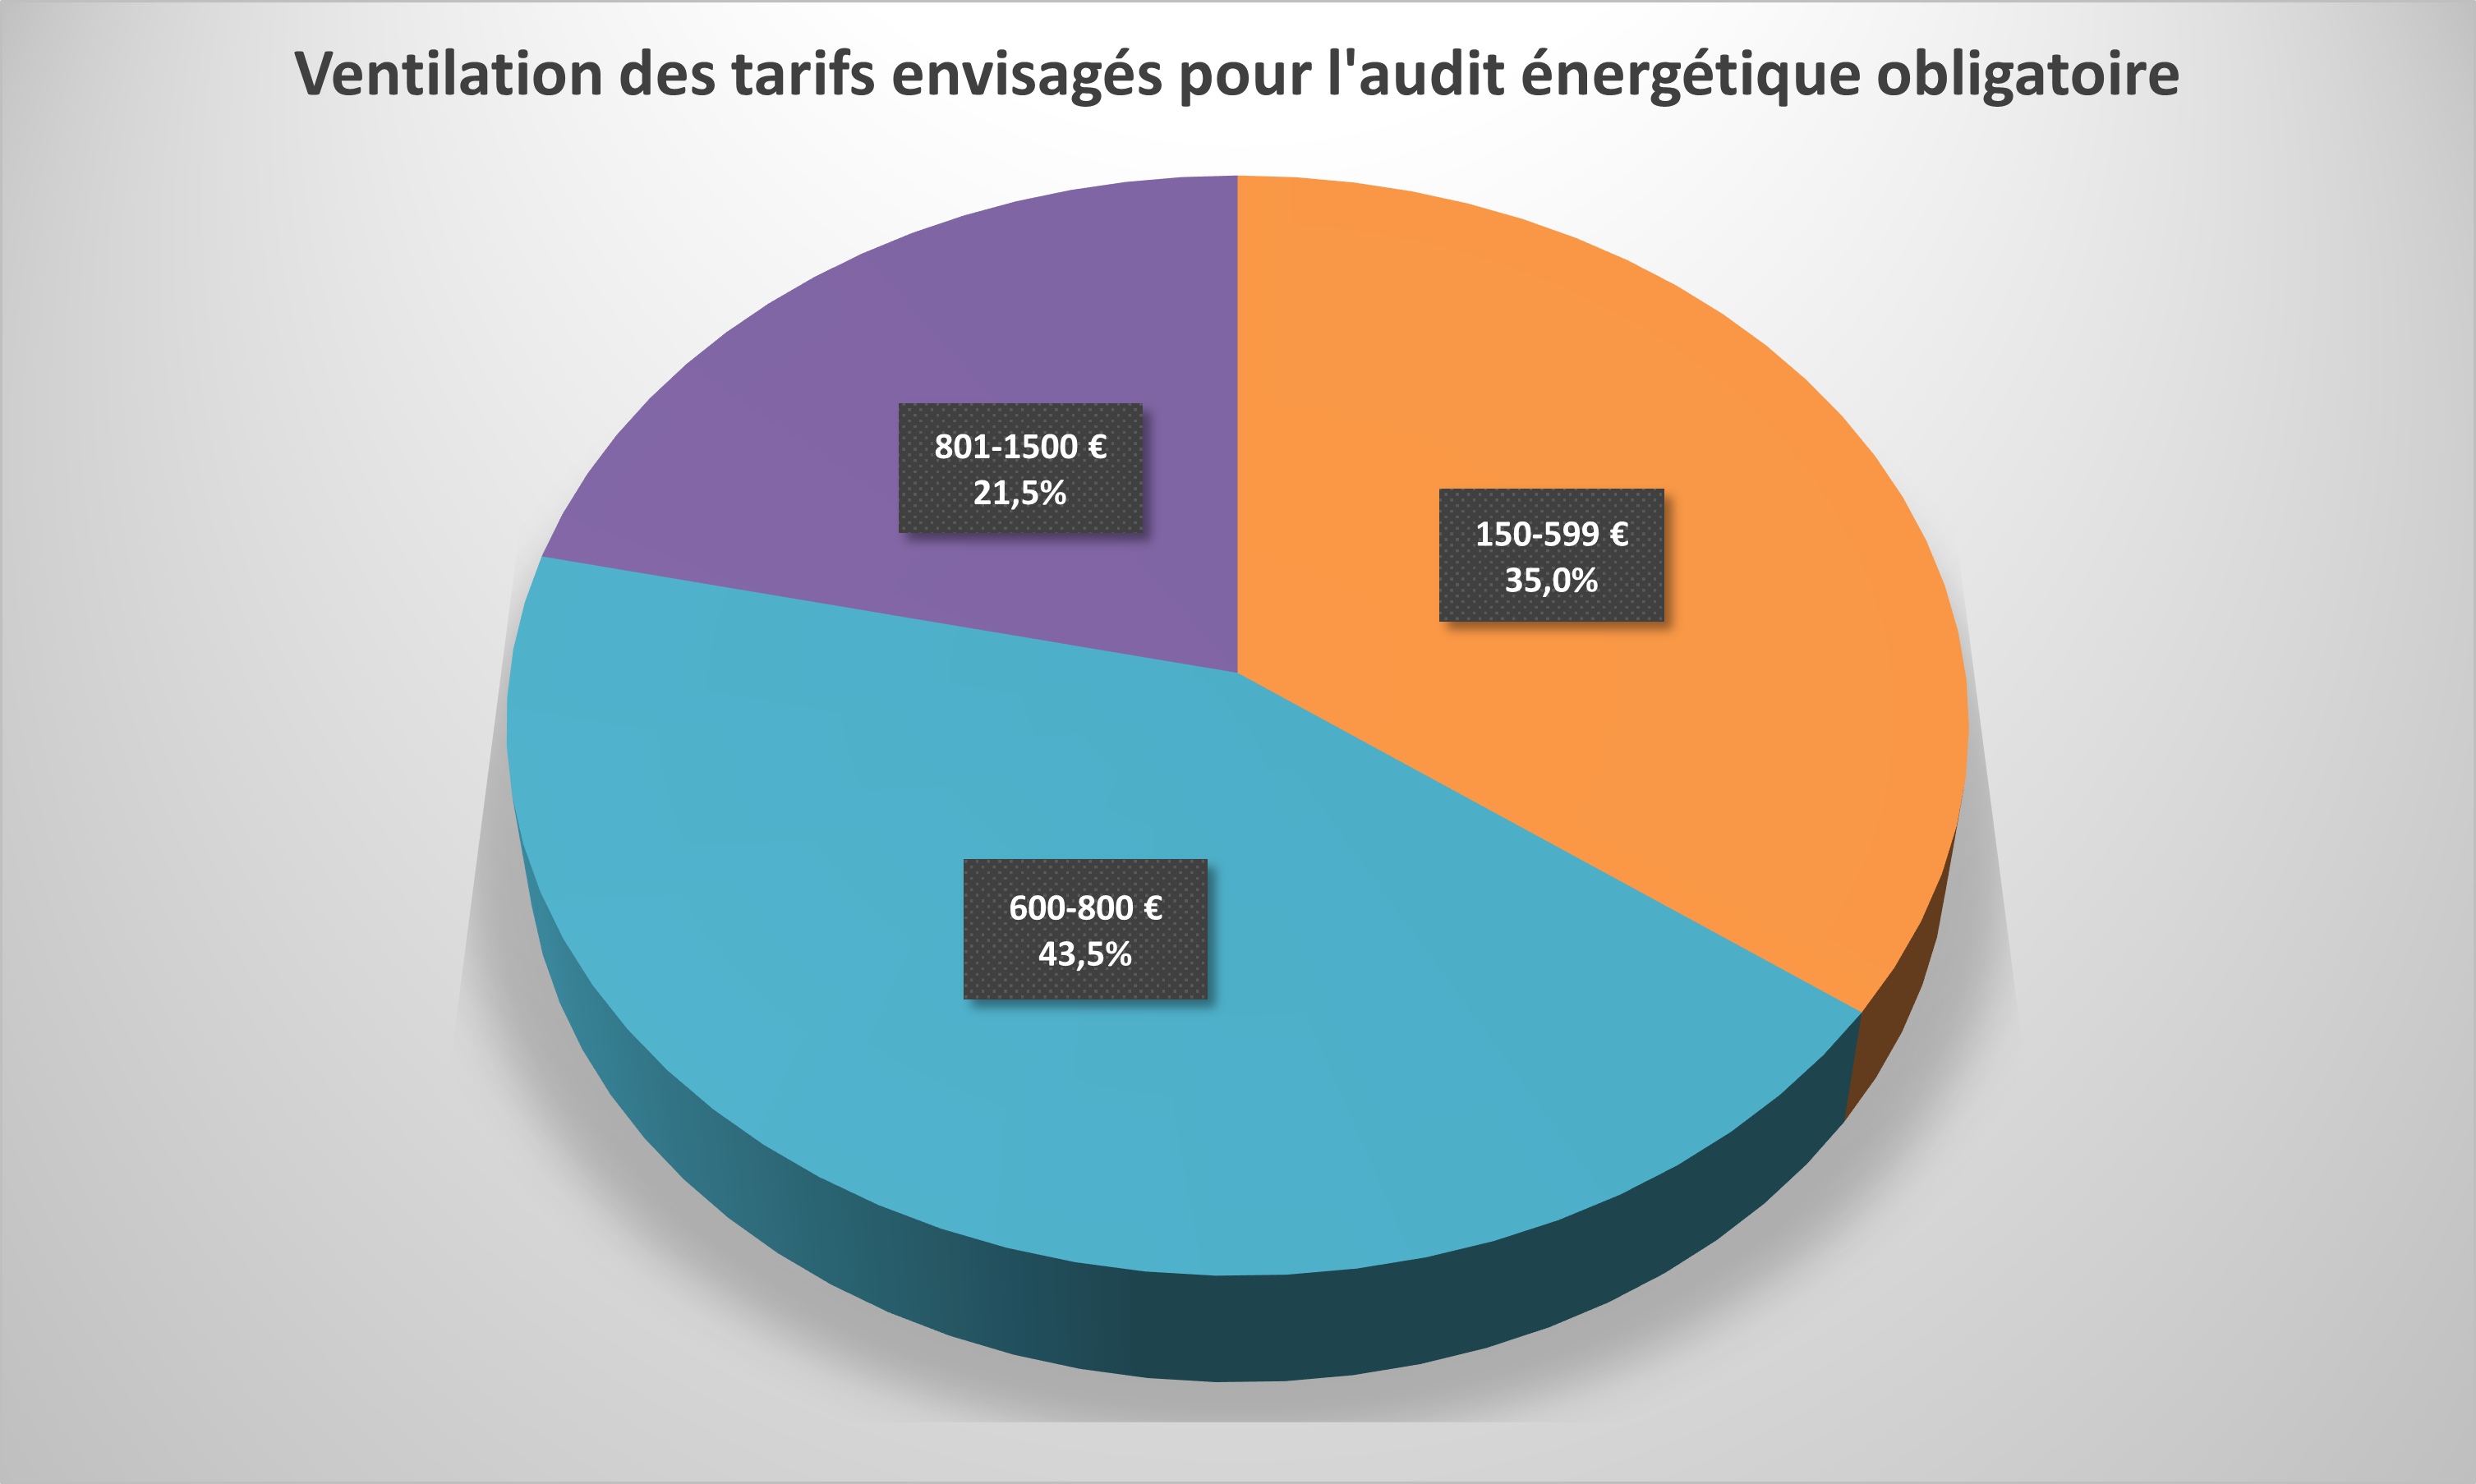 Ventilation des tarifs envisagés pour l'audit énergétique